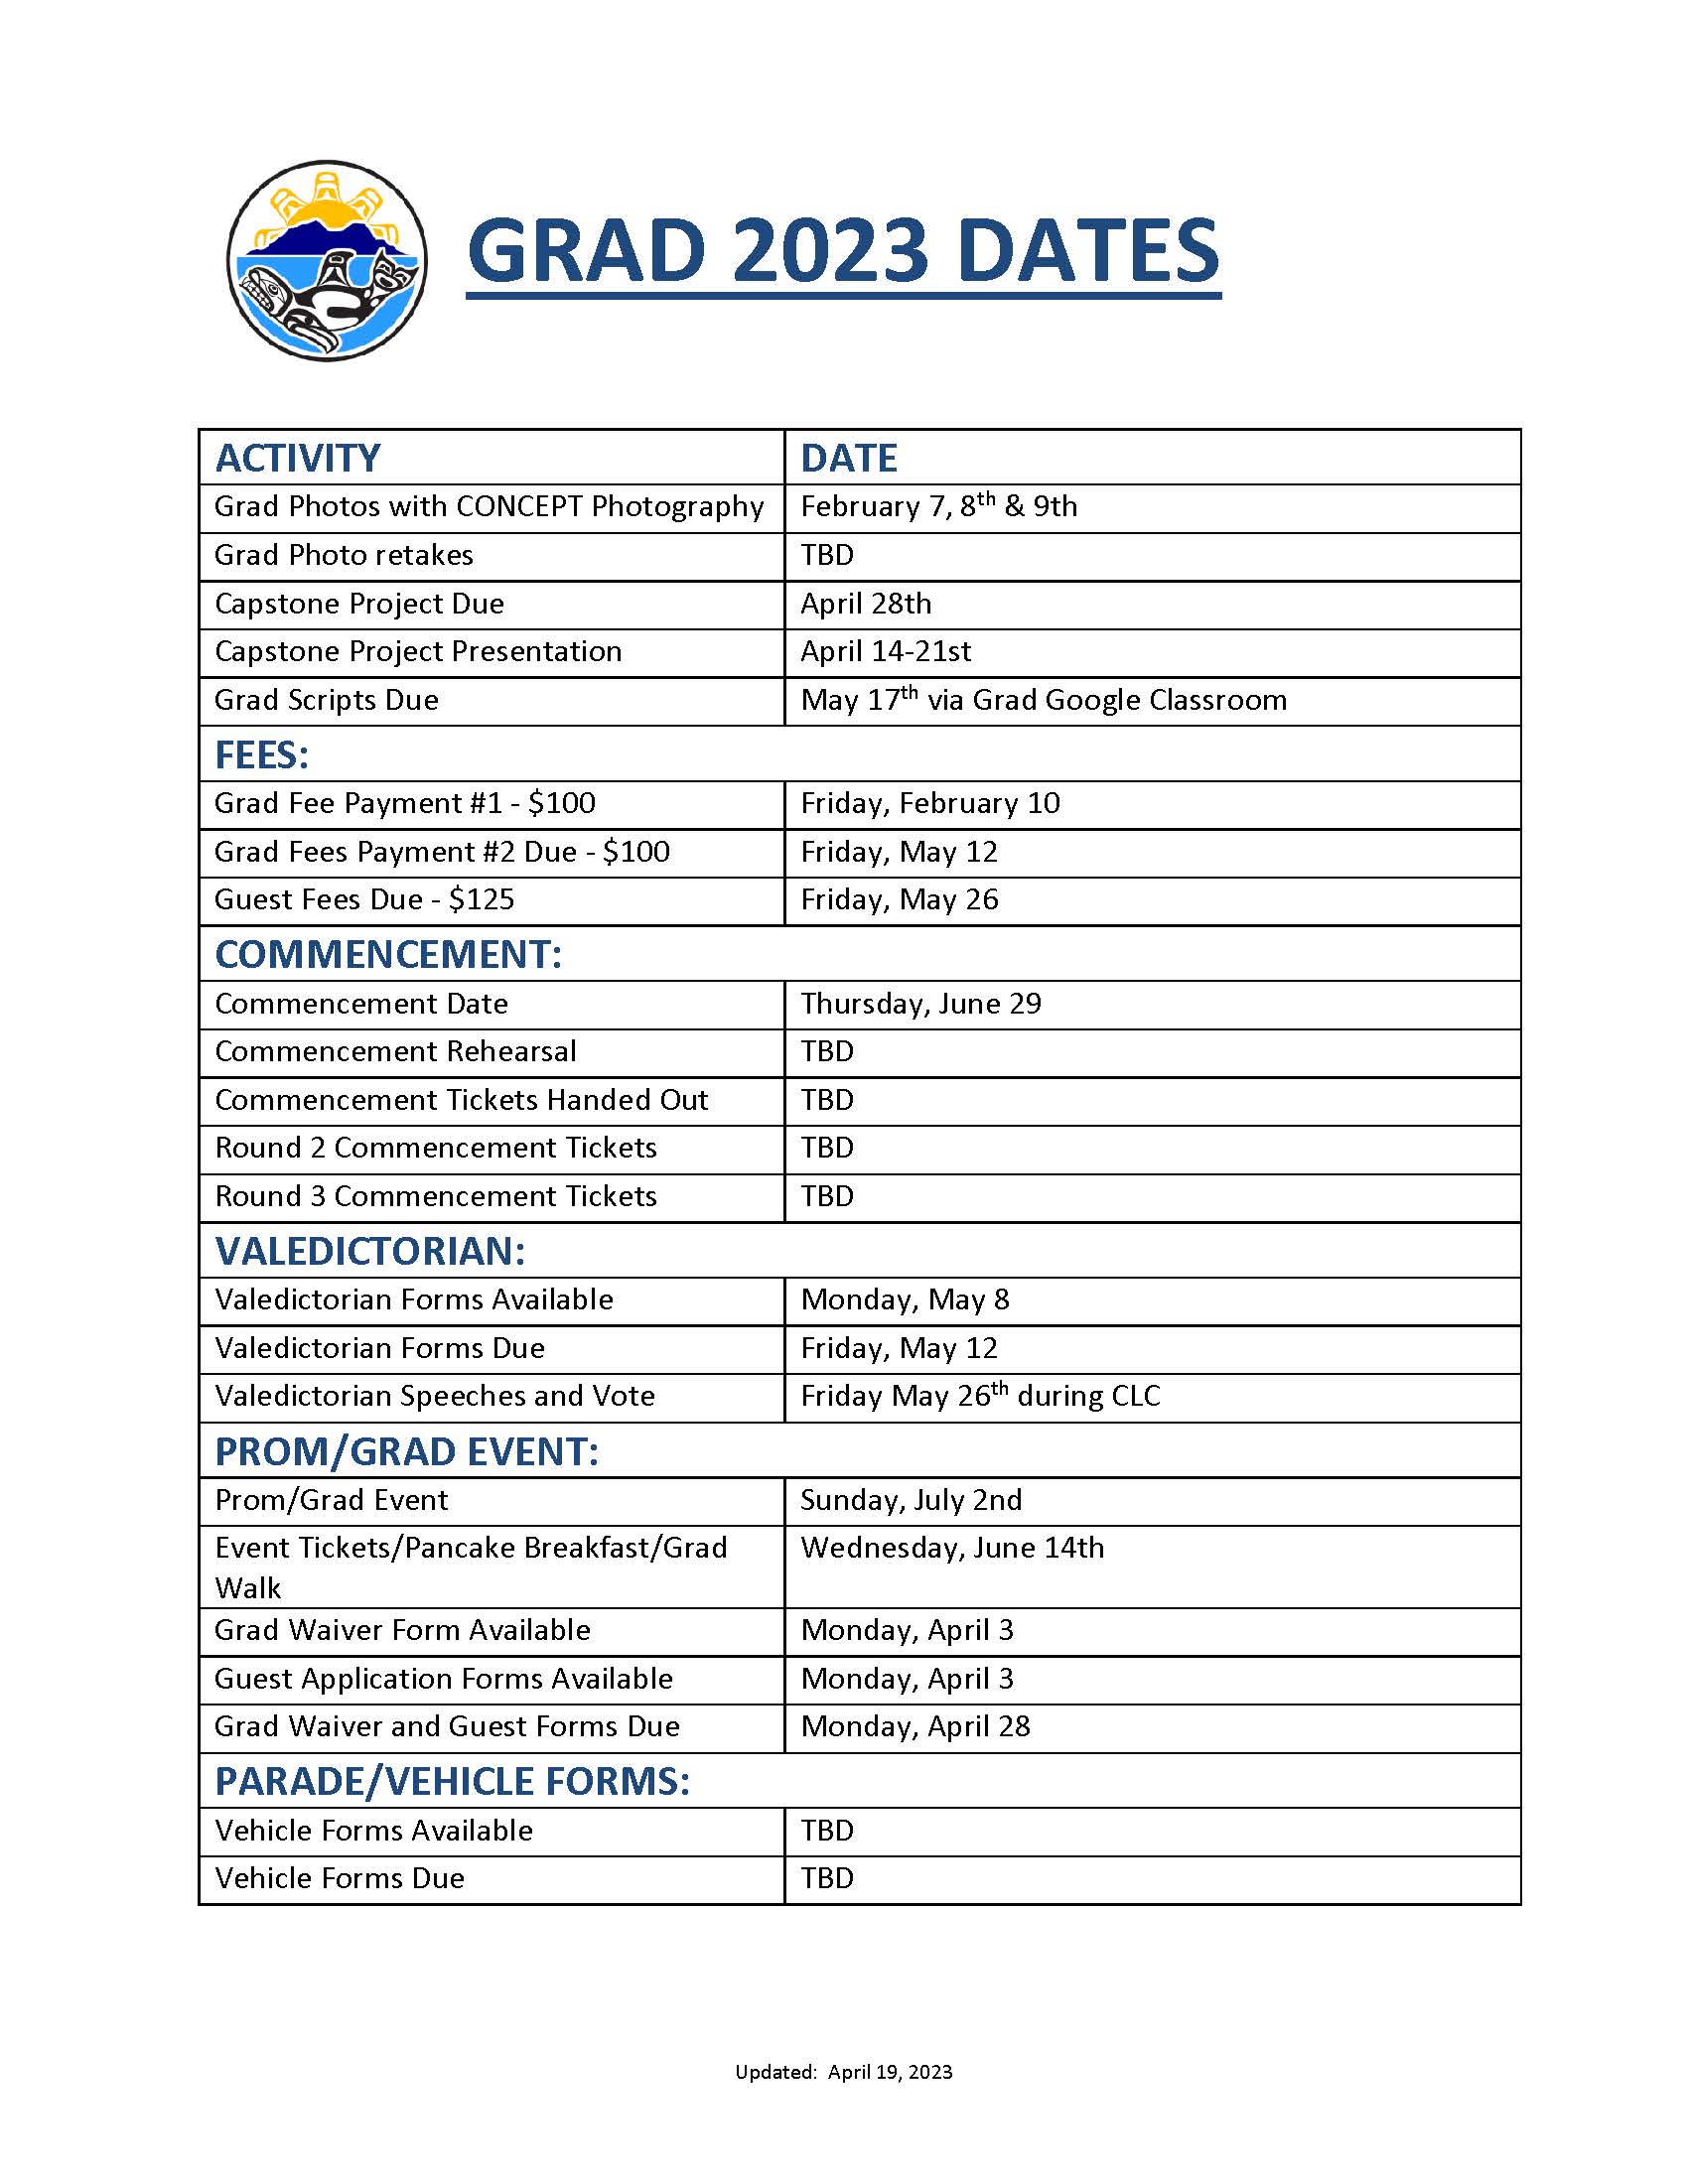 Dates for Grad 2023.jpg